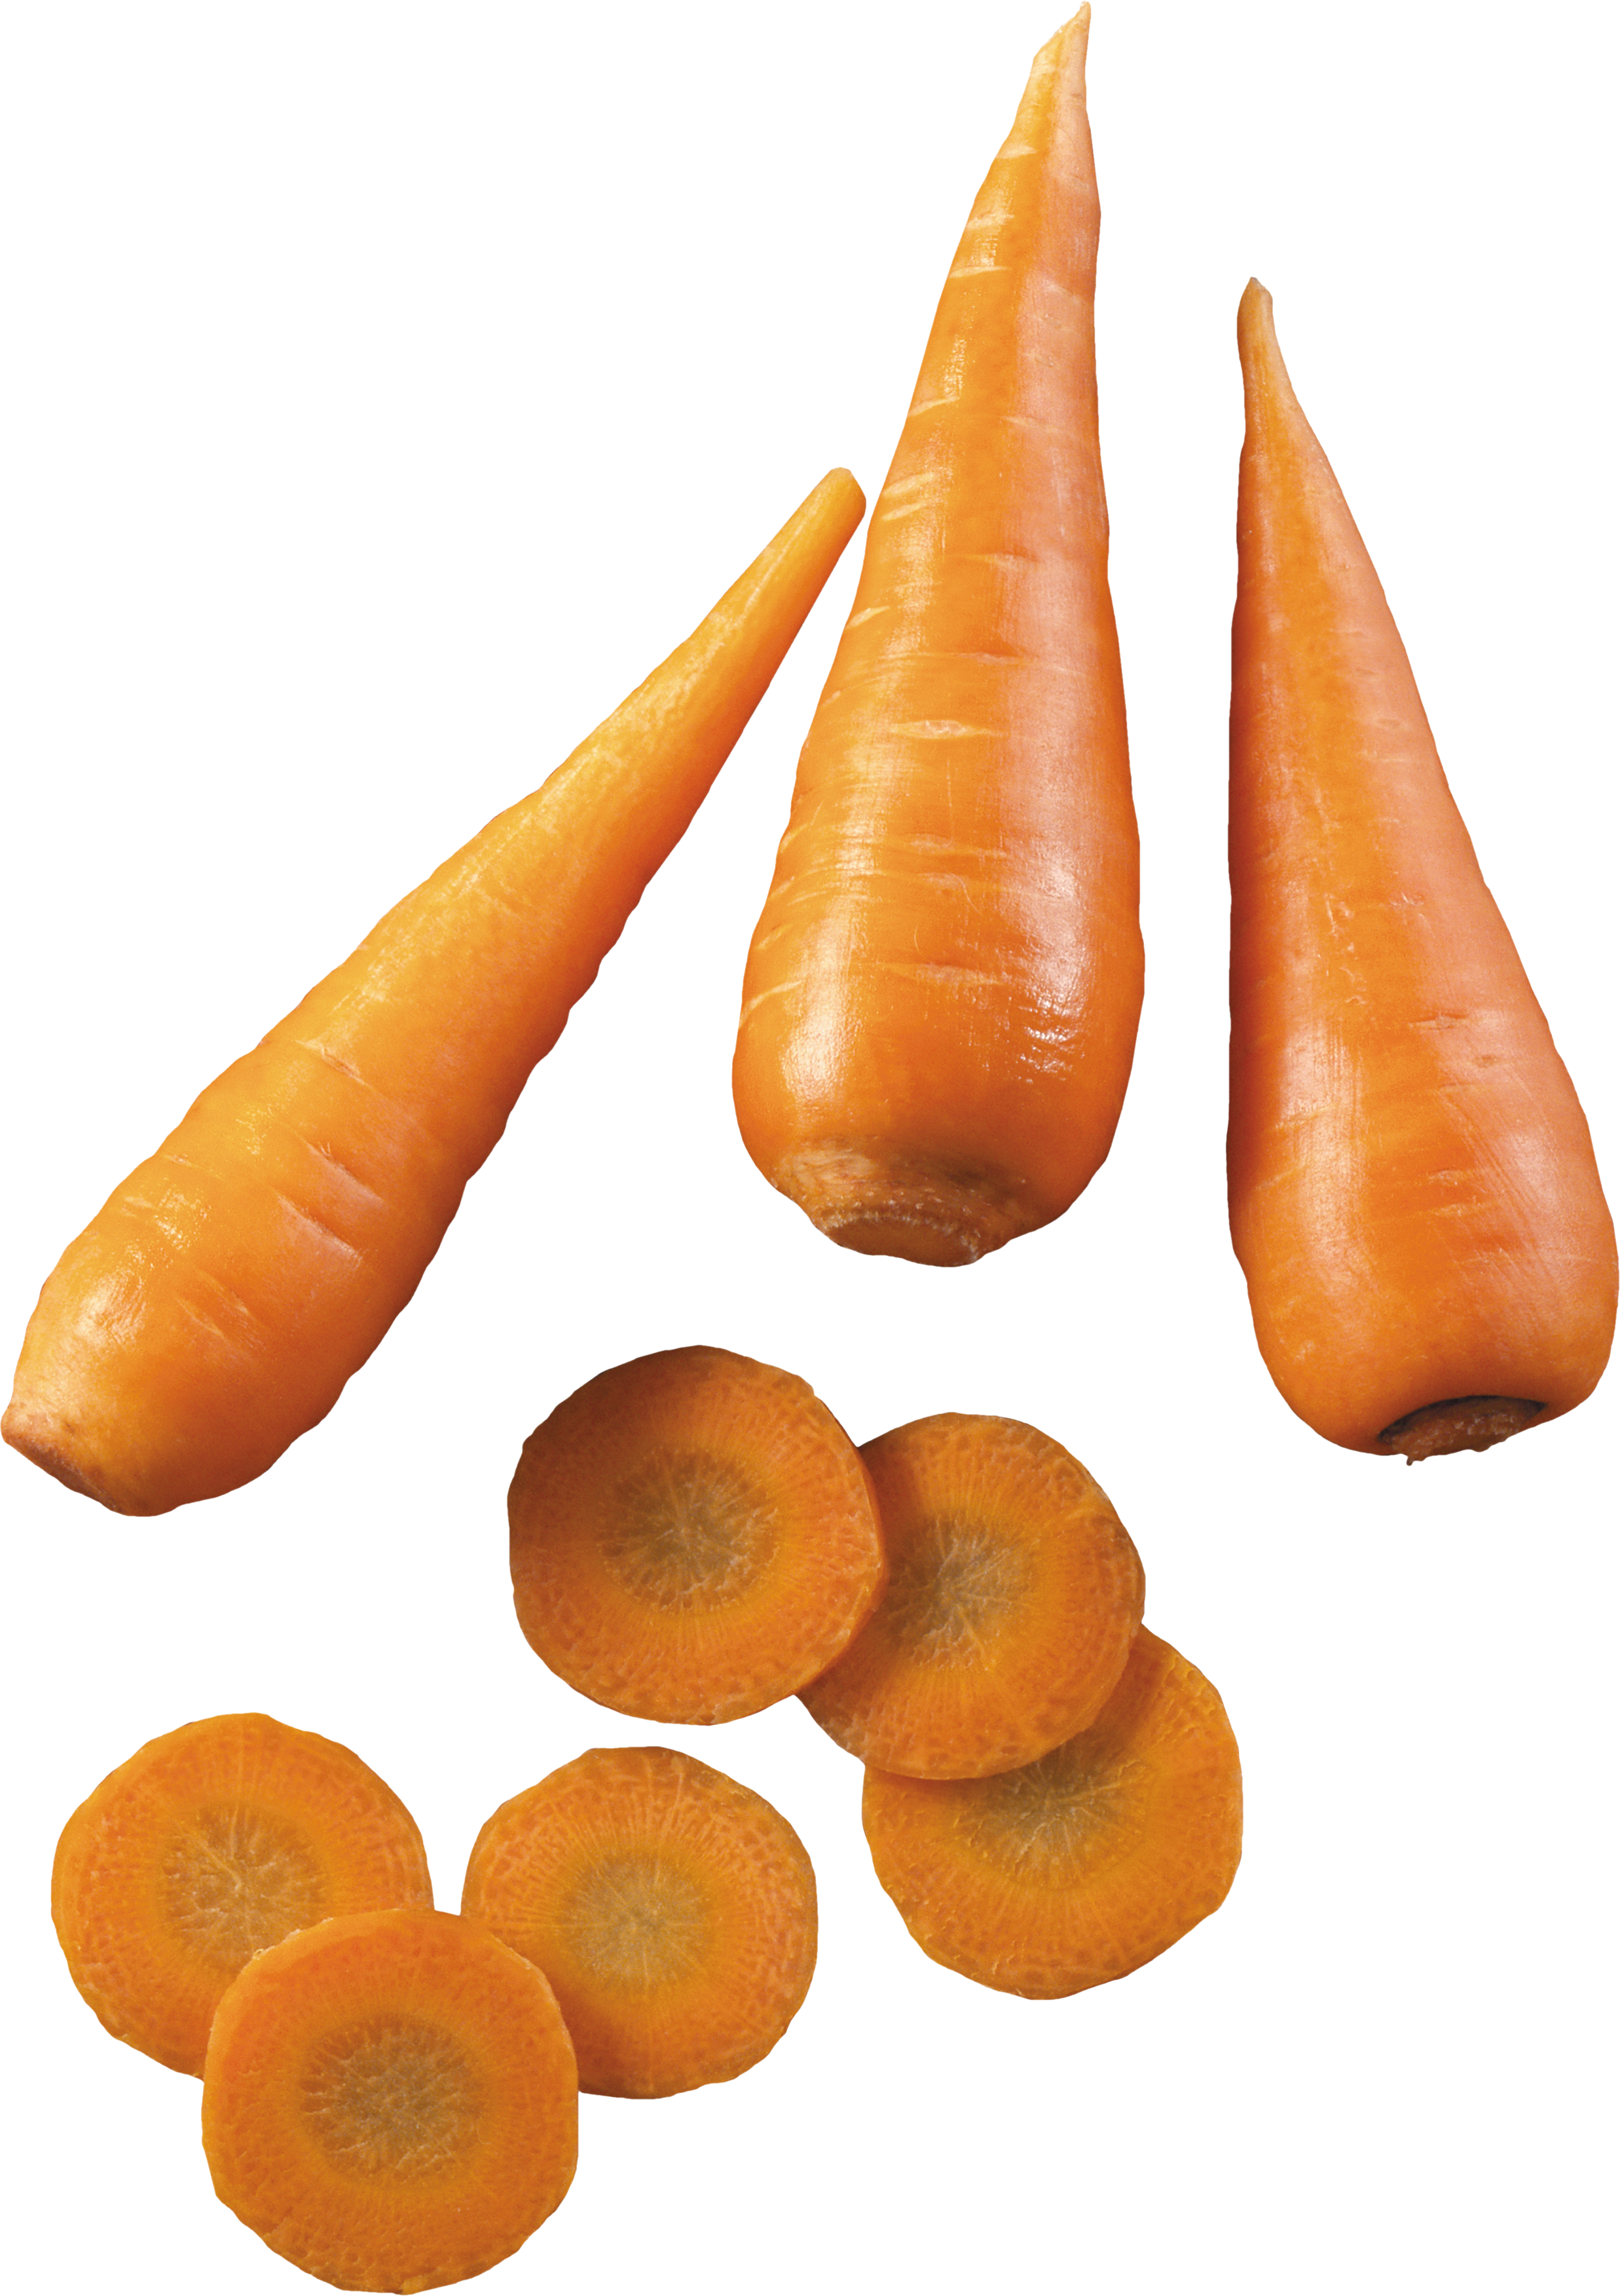 गाजर